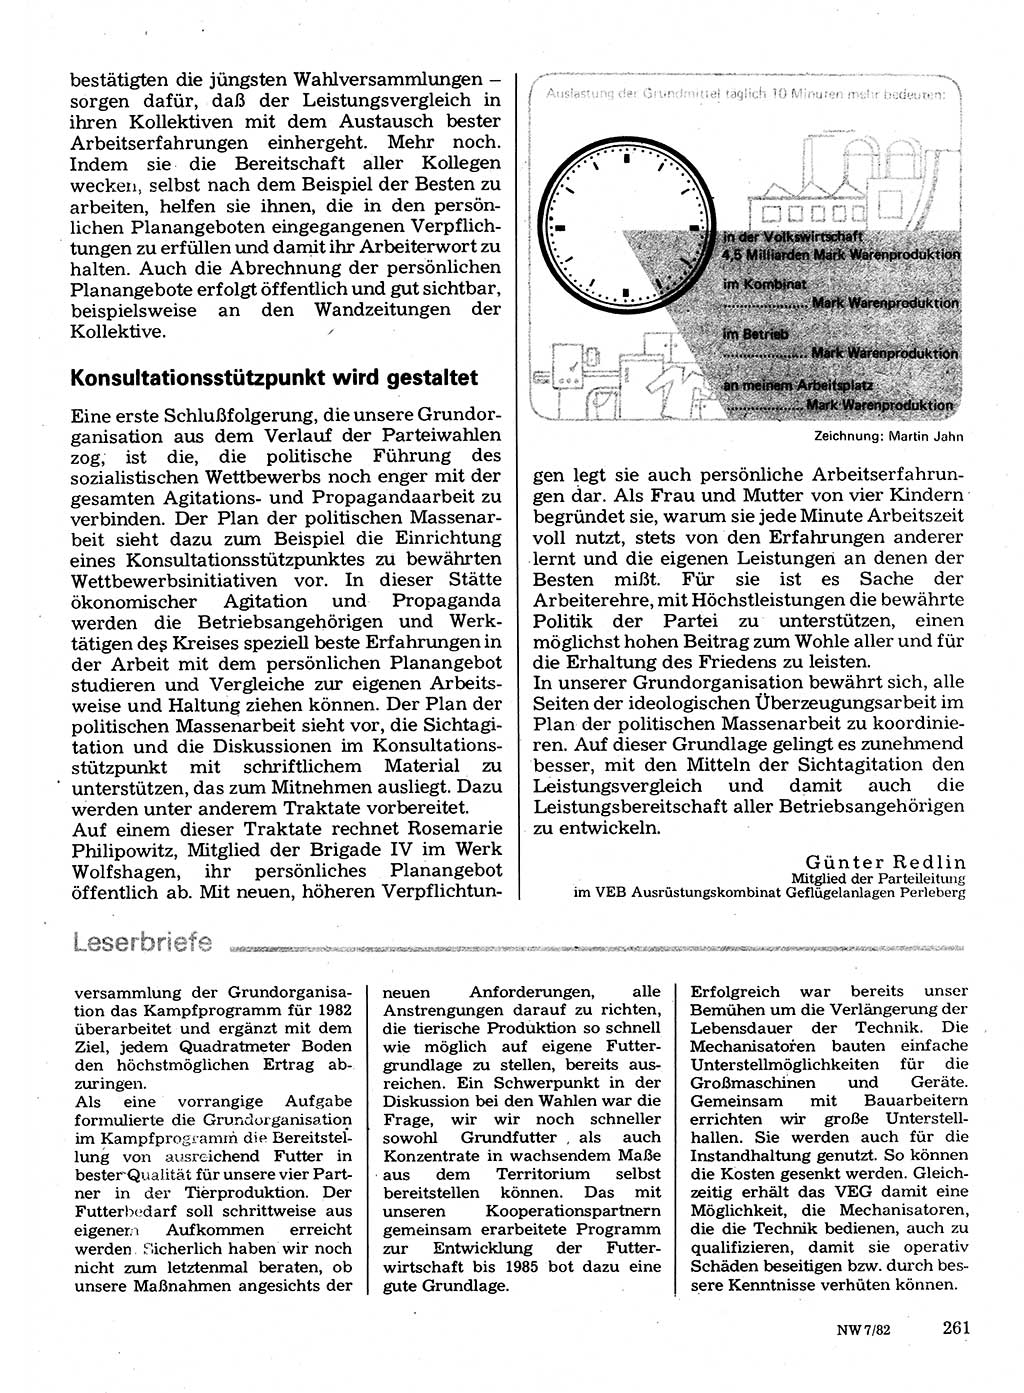 Neuer Weg (NW), Organ des Zentralkomitees (ZK) der SED (Sozialistische Einheitspartei Deutschlands) für Fragen des Parteilebens, 37. Jahrgang [Deutsche Demokratische Republik (DDR)] 1982, Seite 261 (NW ZK SED DDR 1982, S. 261)